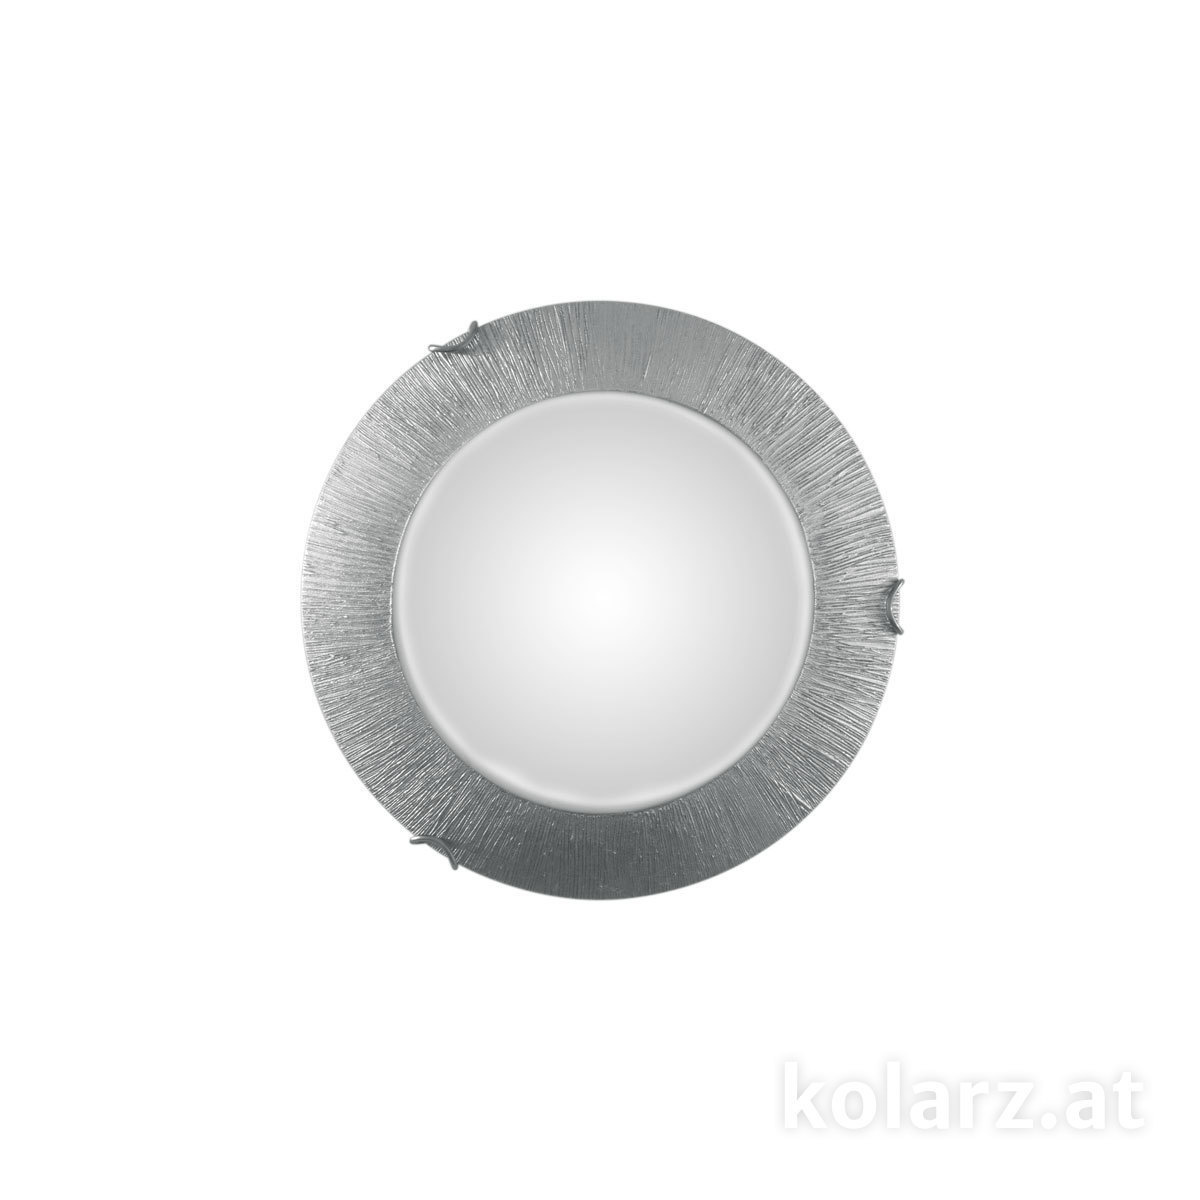 KOLARZ Leuchten Sonderangebote - Sale bei Deckenleuchten & Deckenlampen von KOLARZ Leuchten Deckenleuchte MOON 30 cm A1306.11.5.SunAg